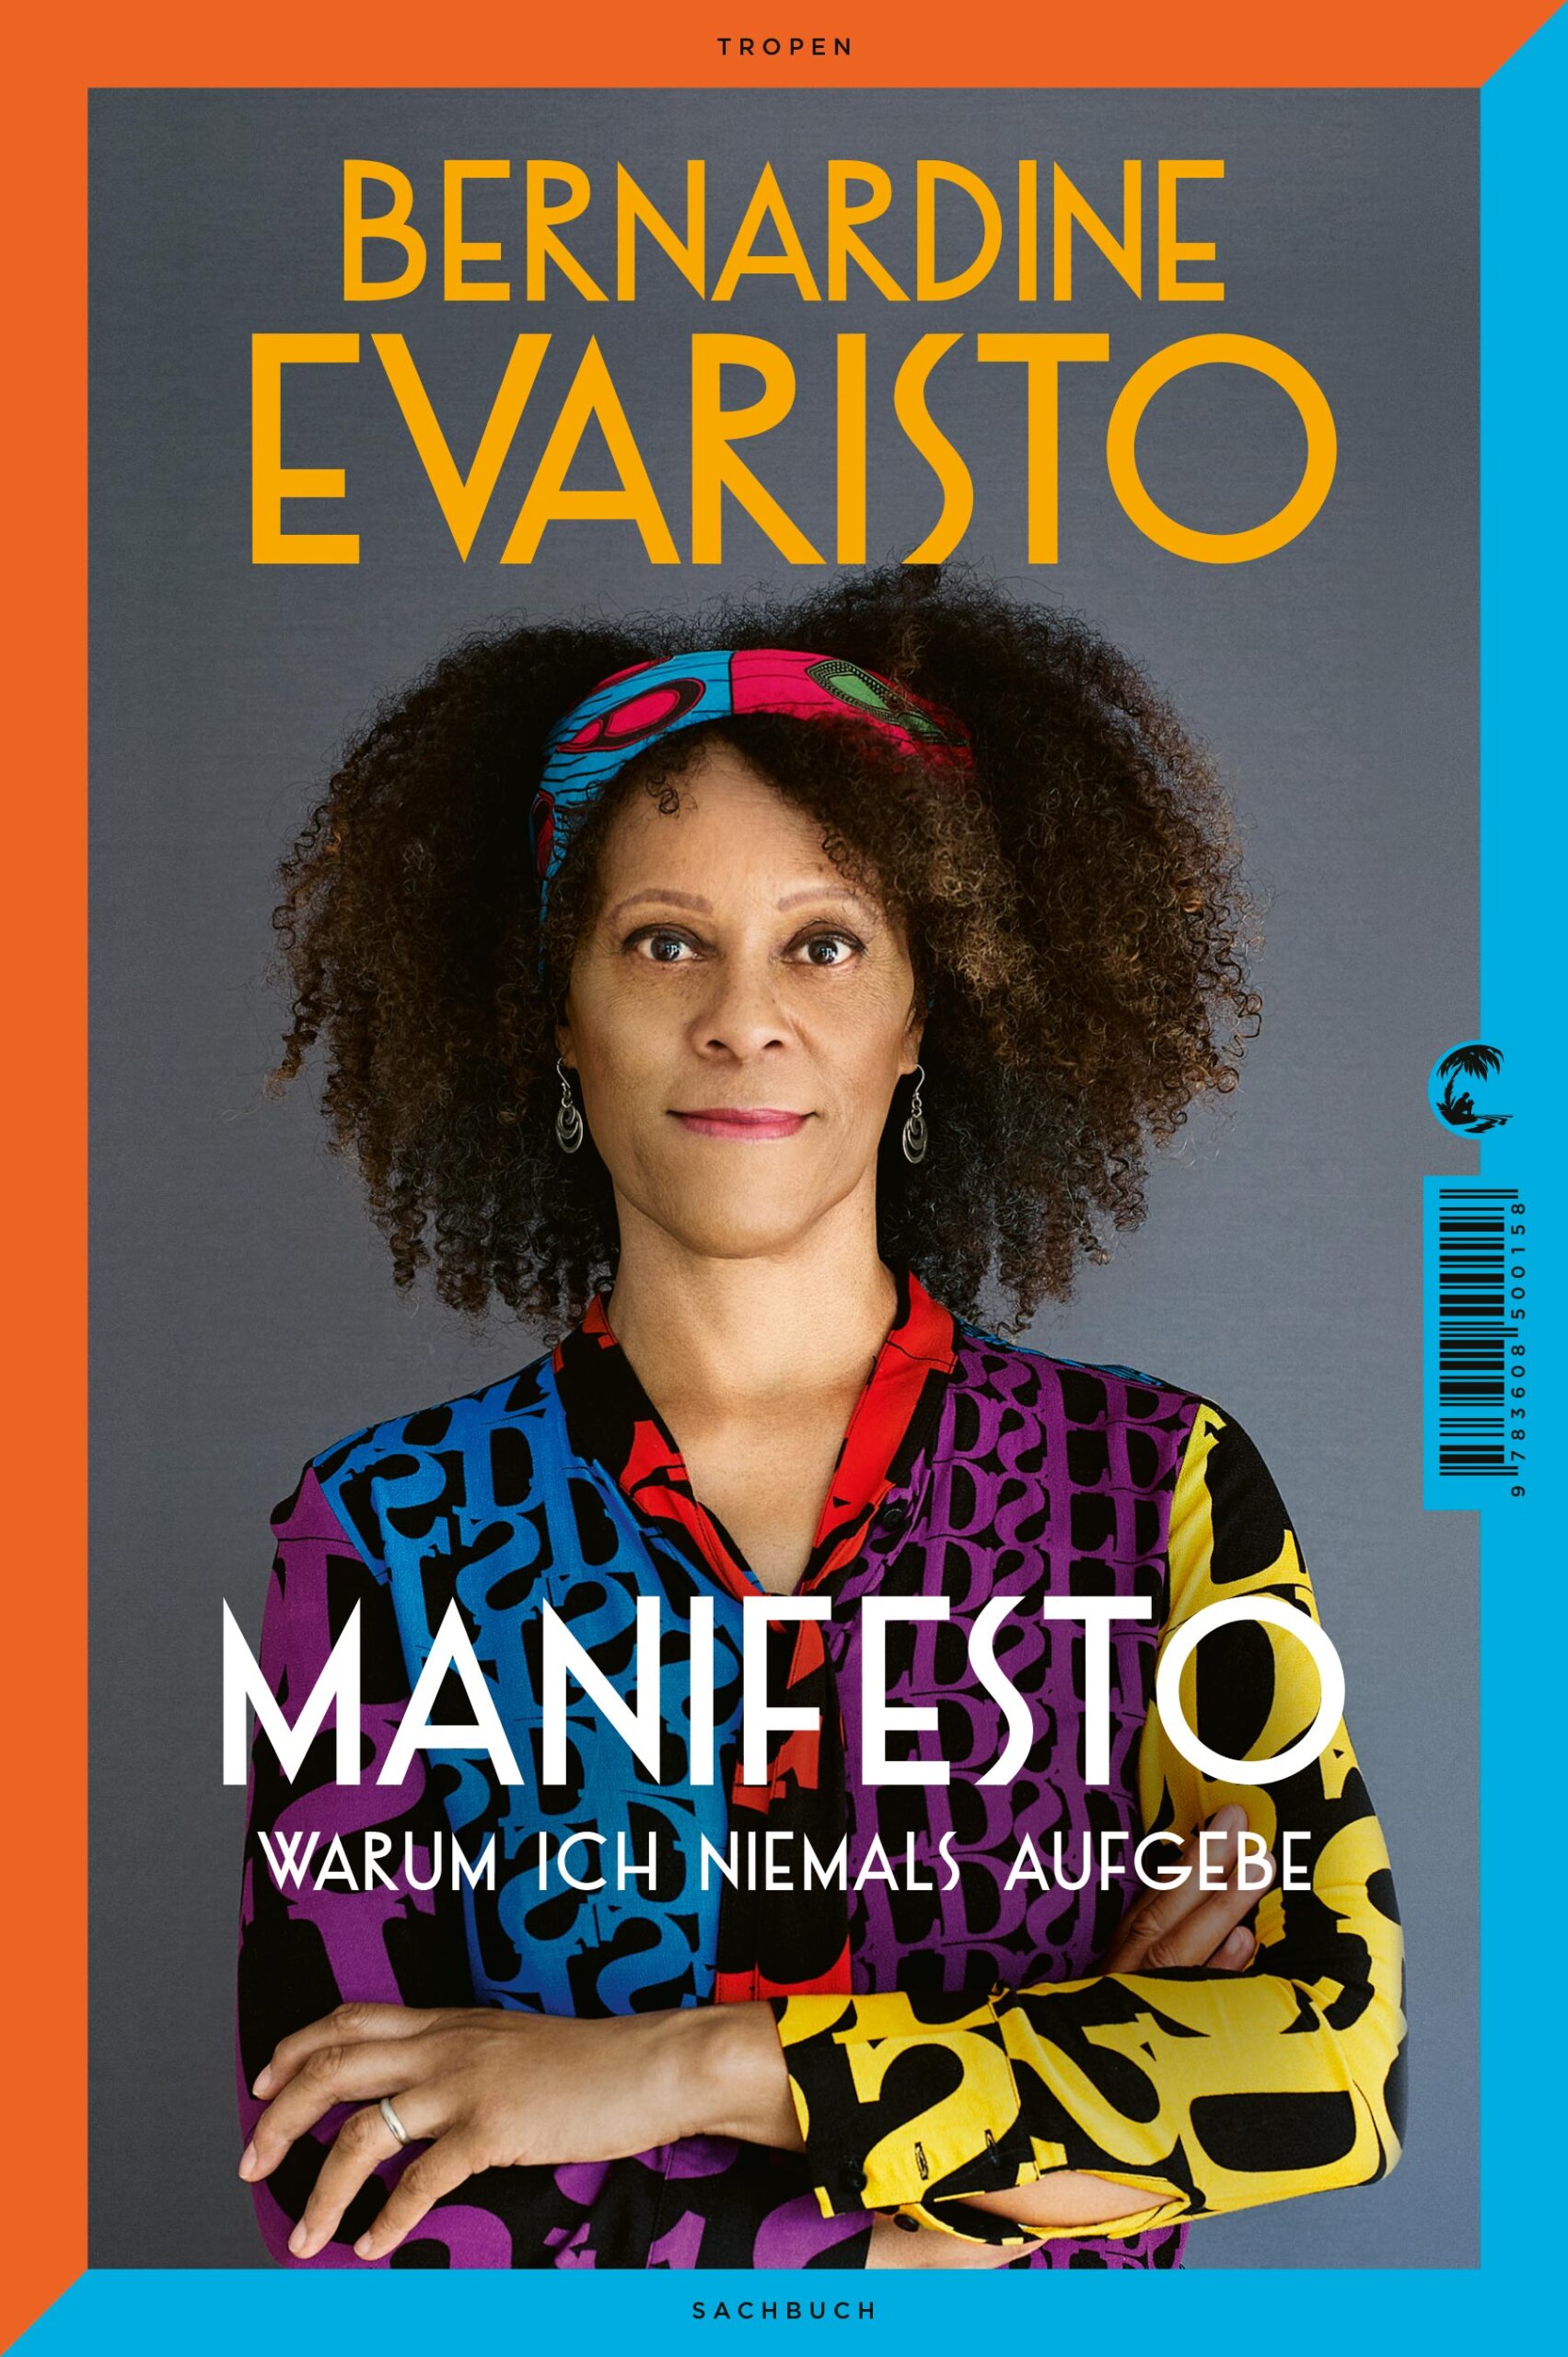 Buchcover von Bernardine Evaristos Manifesto